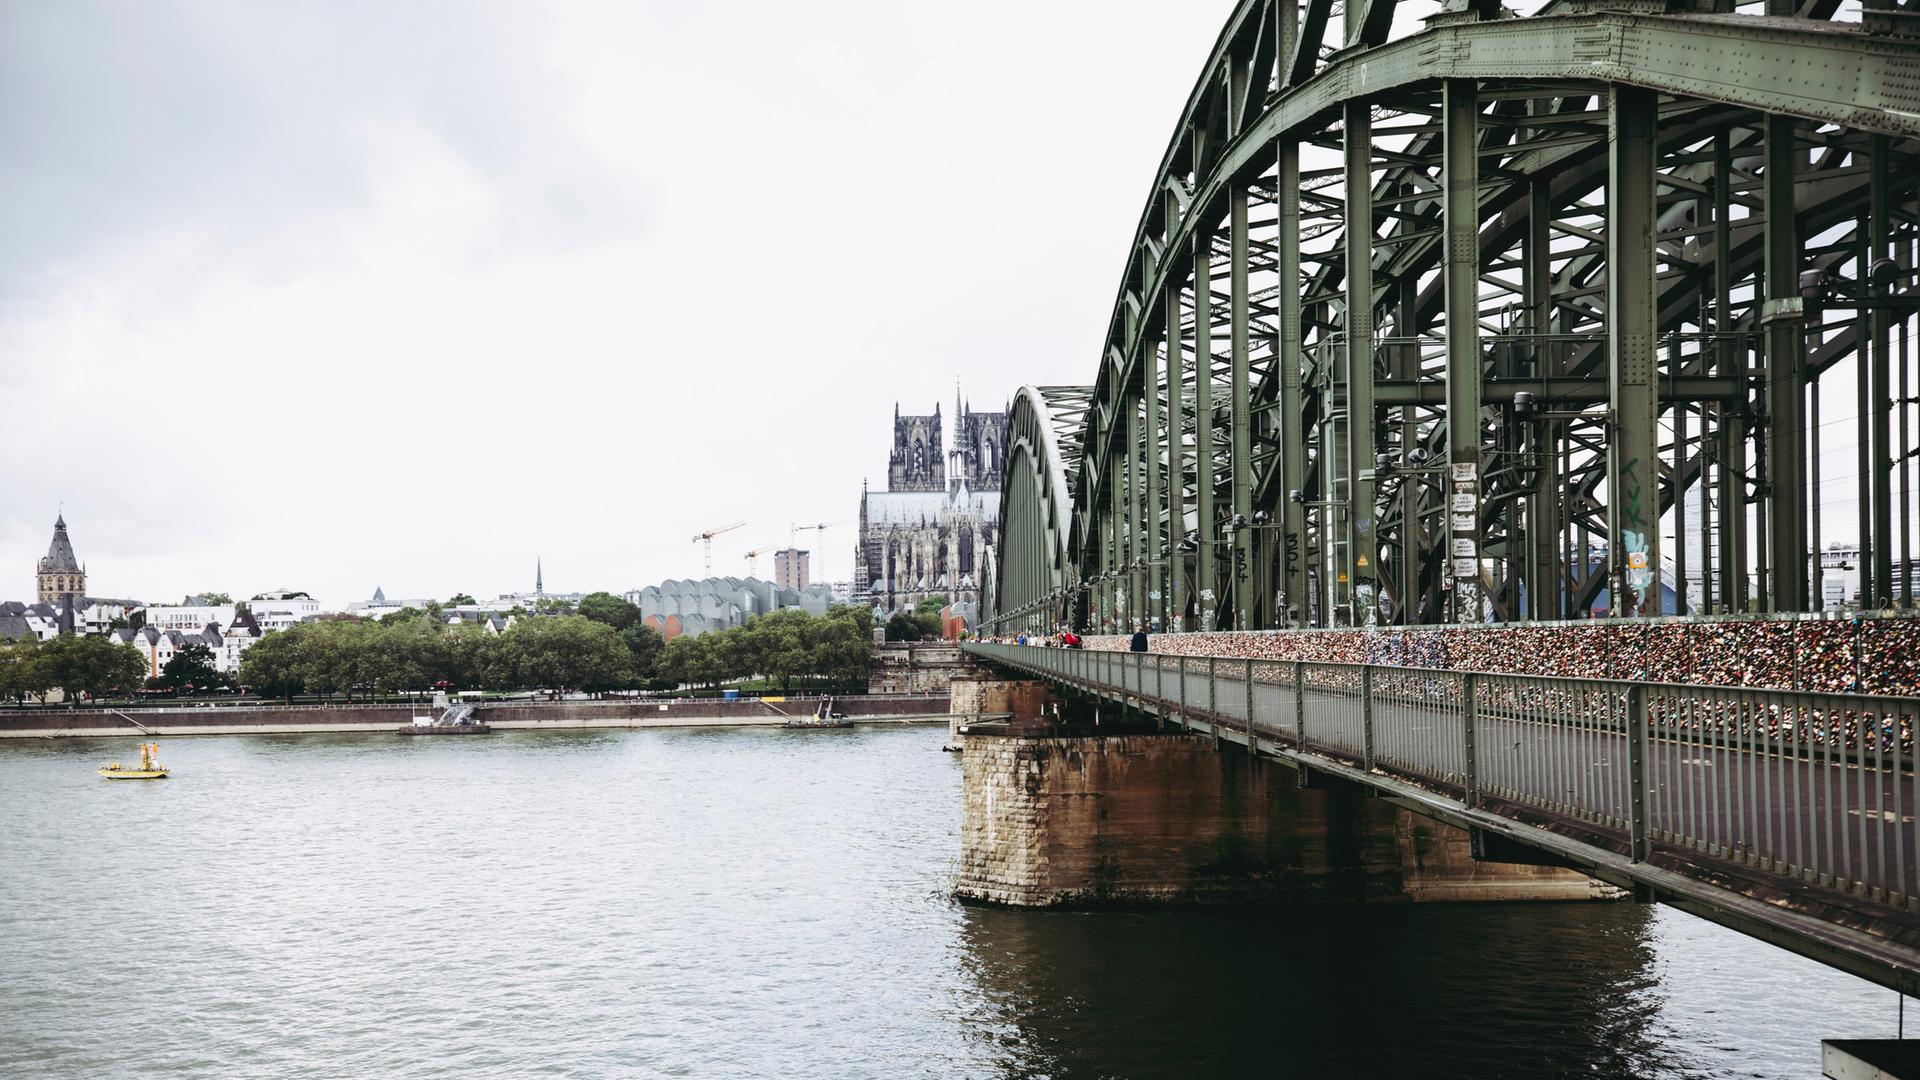 Köln ohne Dom: Die Turmspitzen des kölner Doms sind aus der Stadtansicht entfernt.